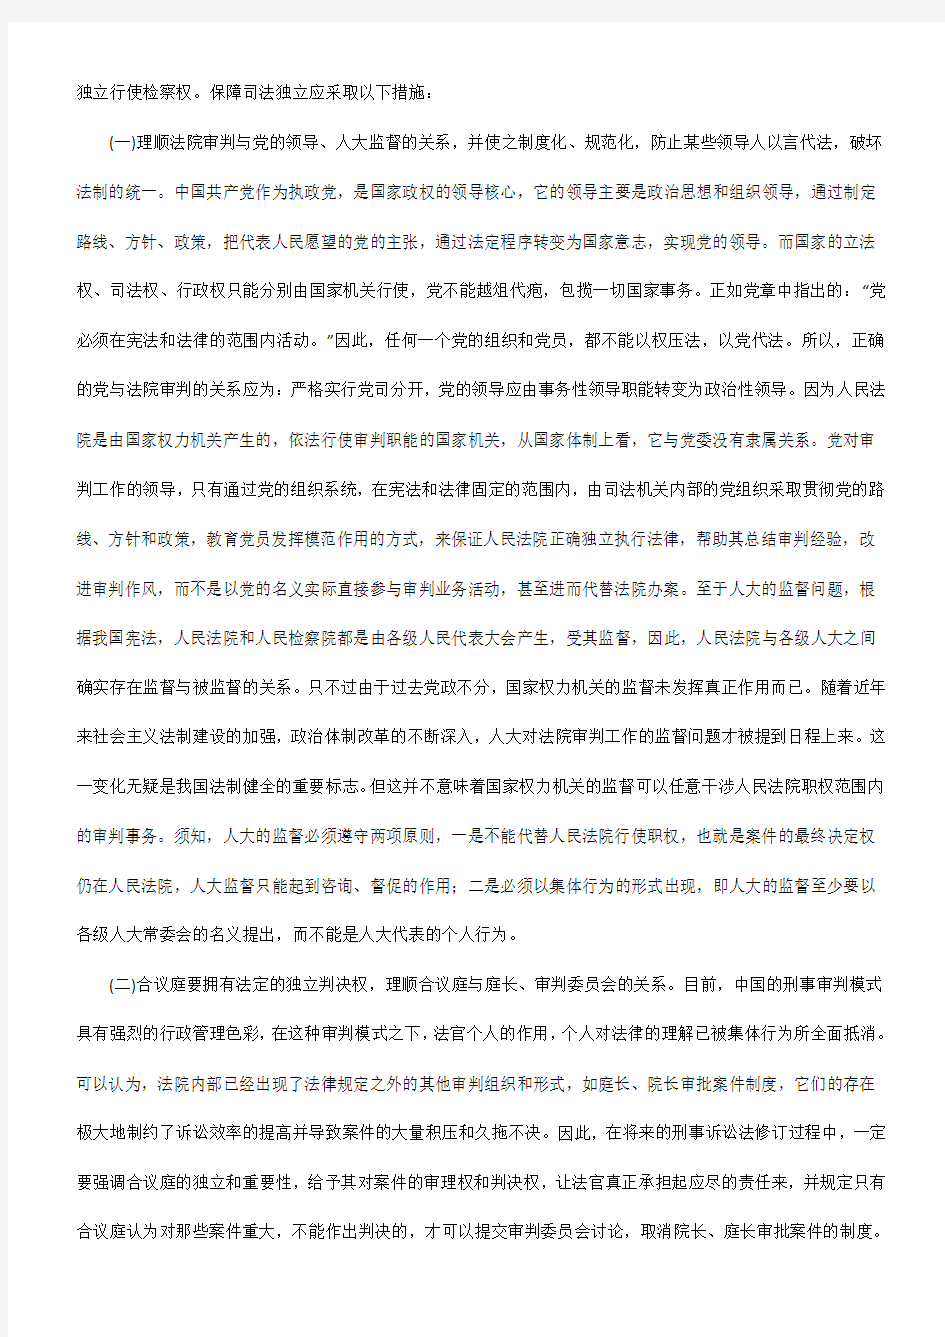 中国刑事诉讼制度的进一步完善